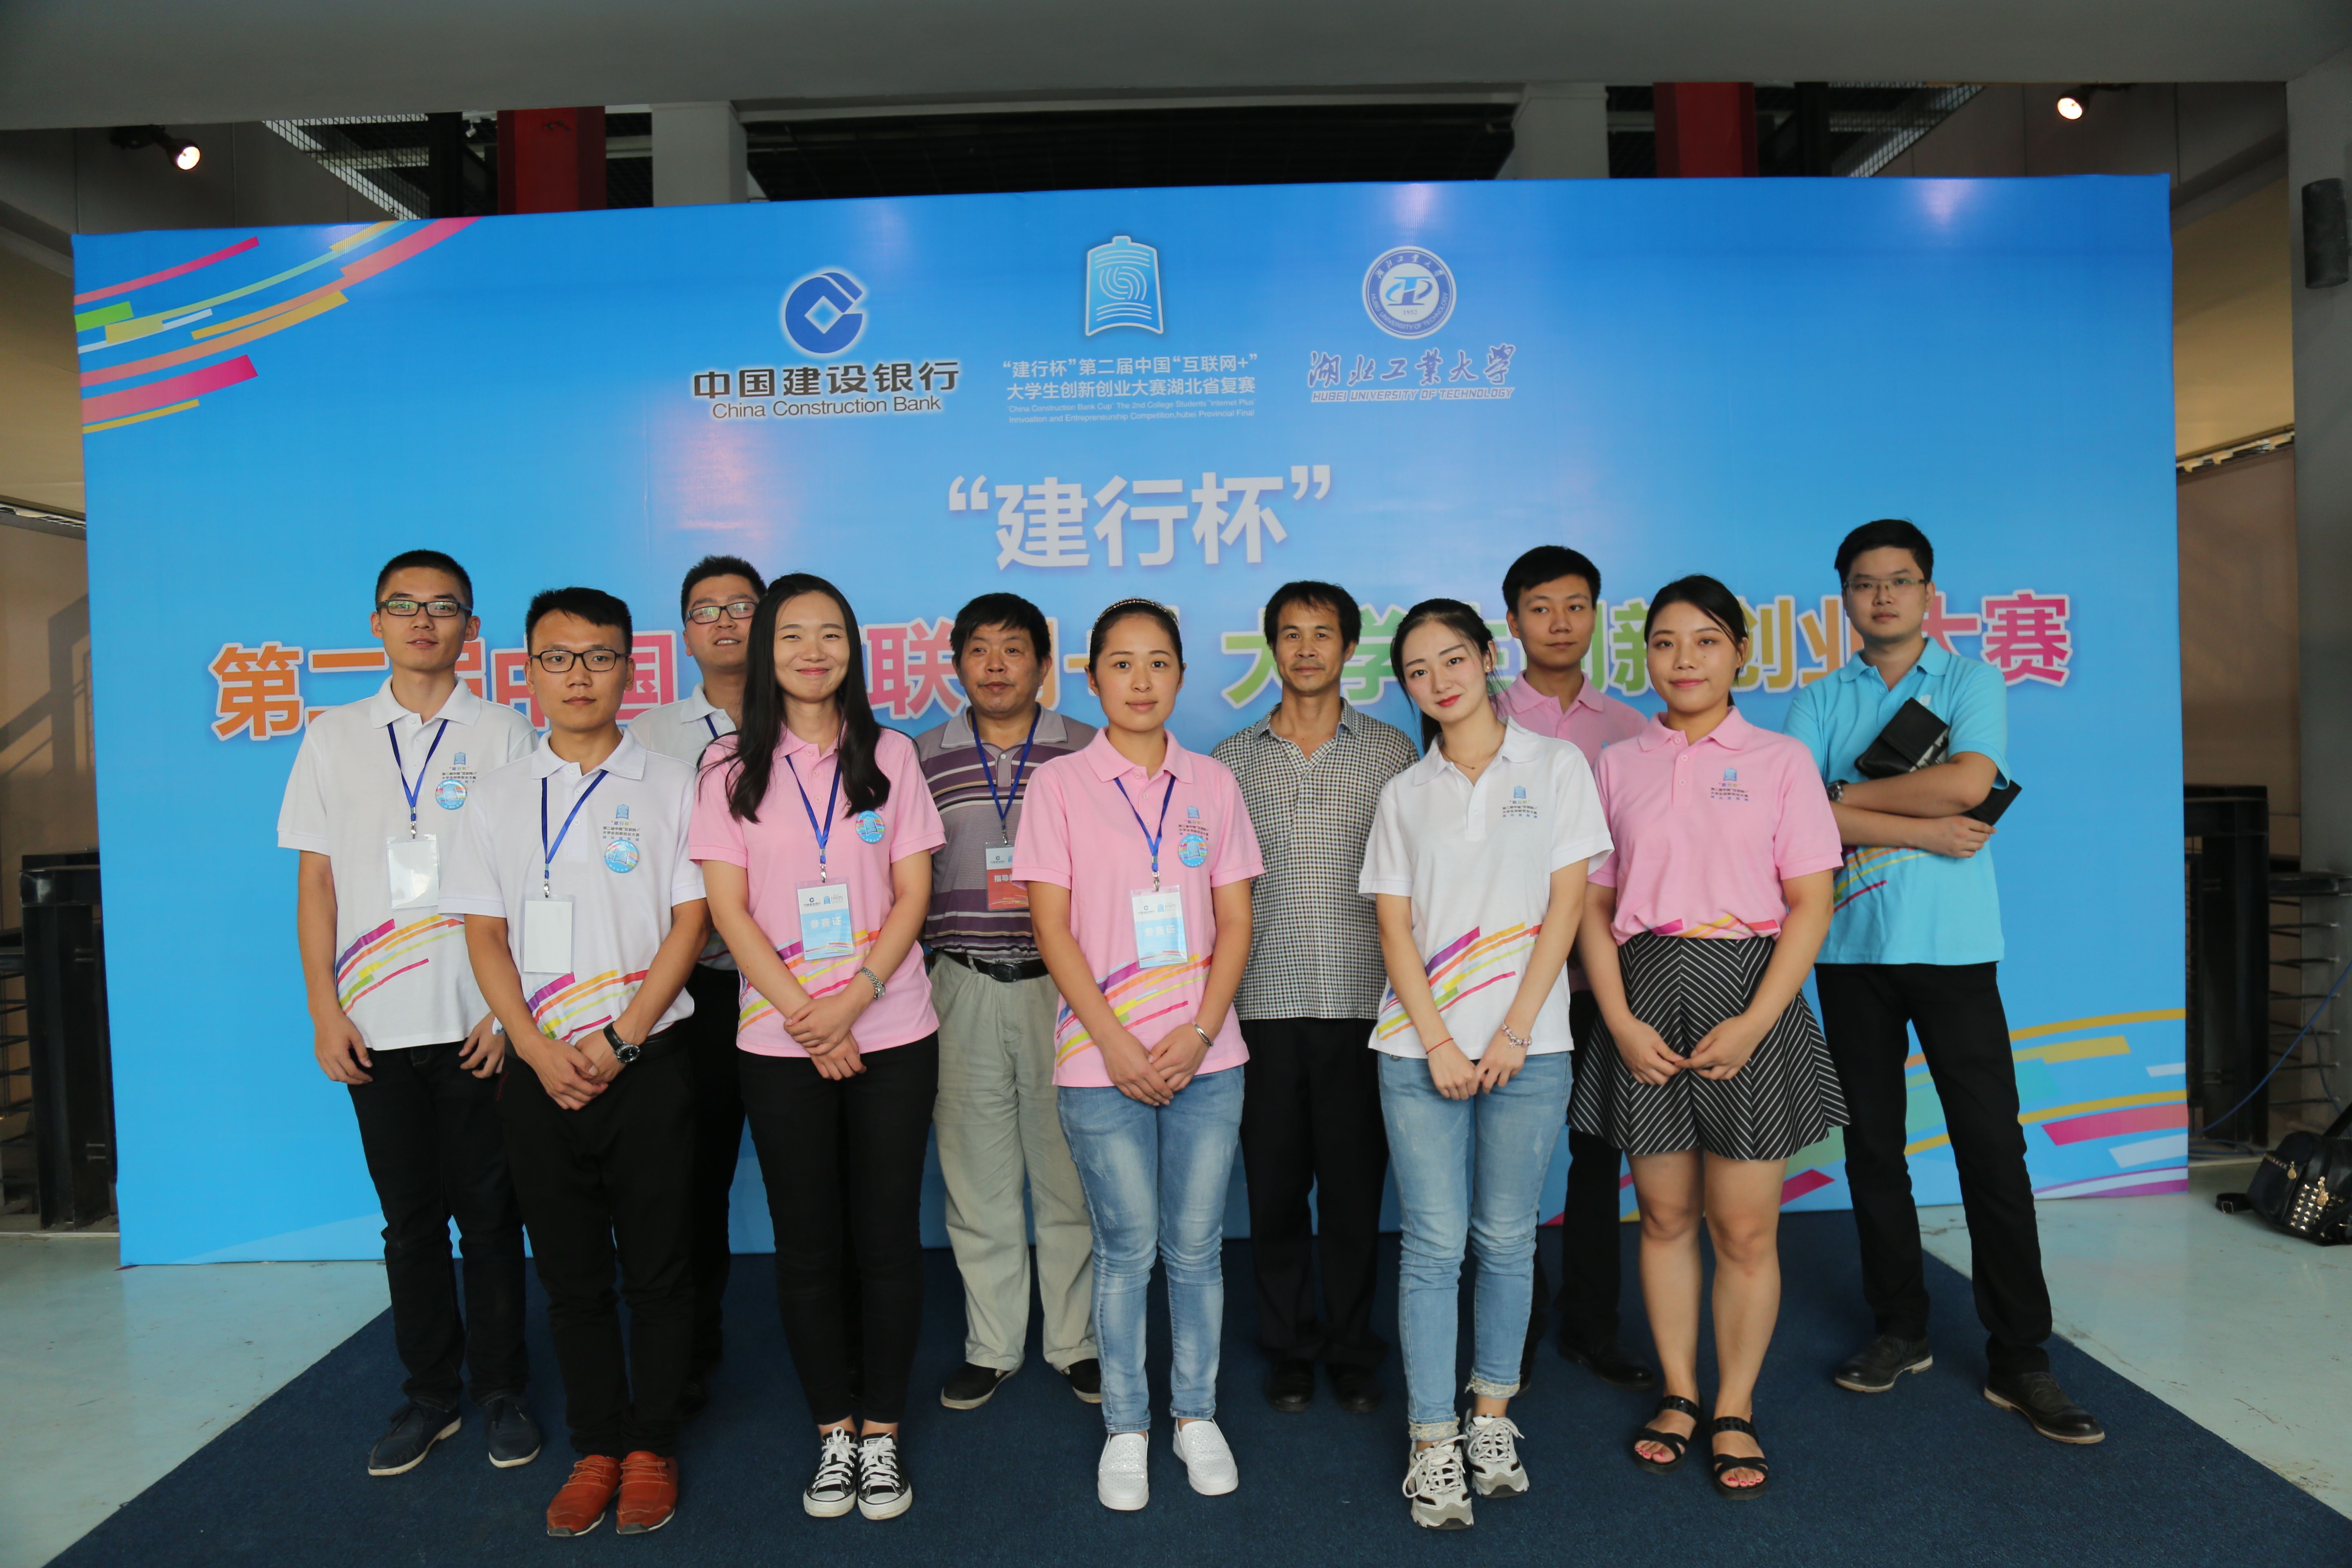 我校在湖北省第二届“互联网+”创新创业大赛中获金奖